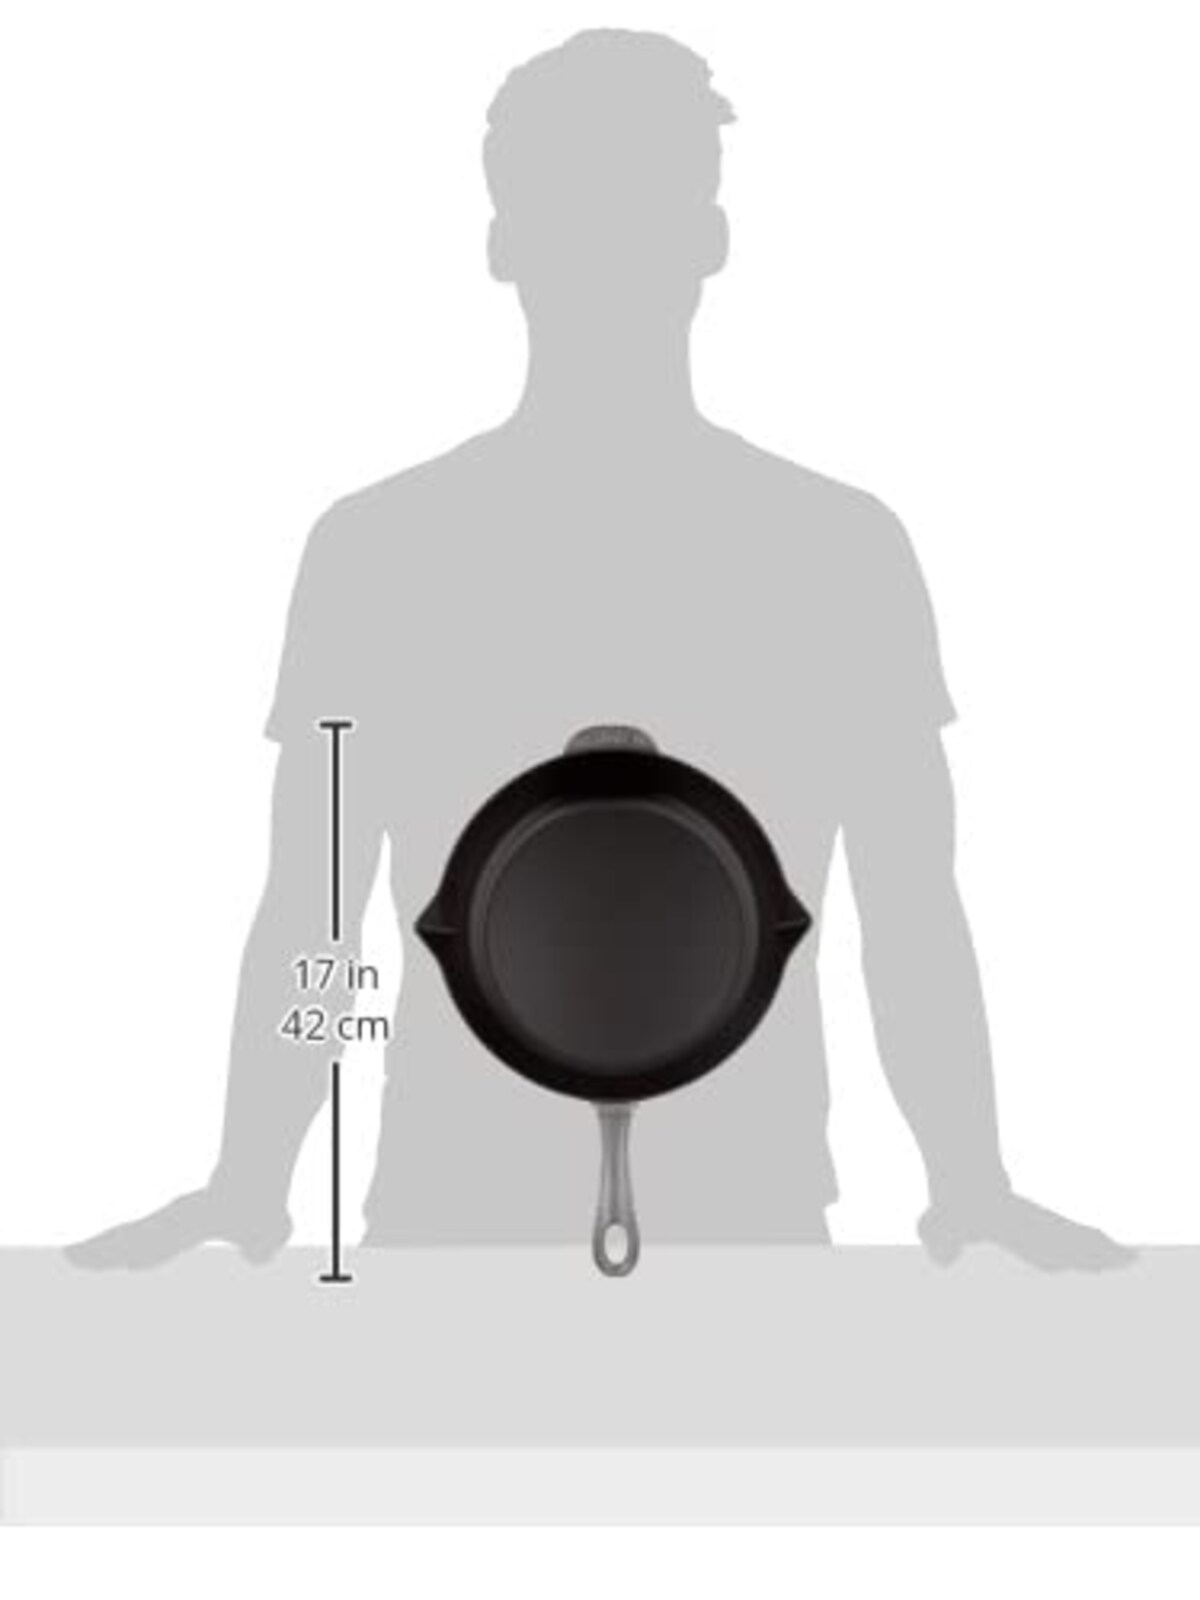  【アウトレット】 staub ストウブ 「 ラウンド フライパン グレー 26cm 」 フライパン 鋳物 ホーロー IH対応 【日本正規販売品】Fry pan with pouring spout 40510-616-5画像6 